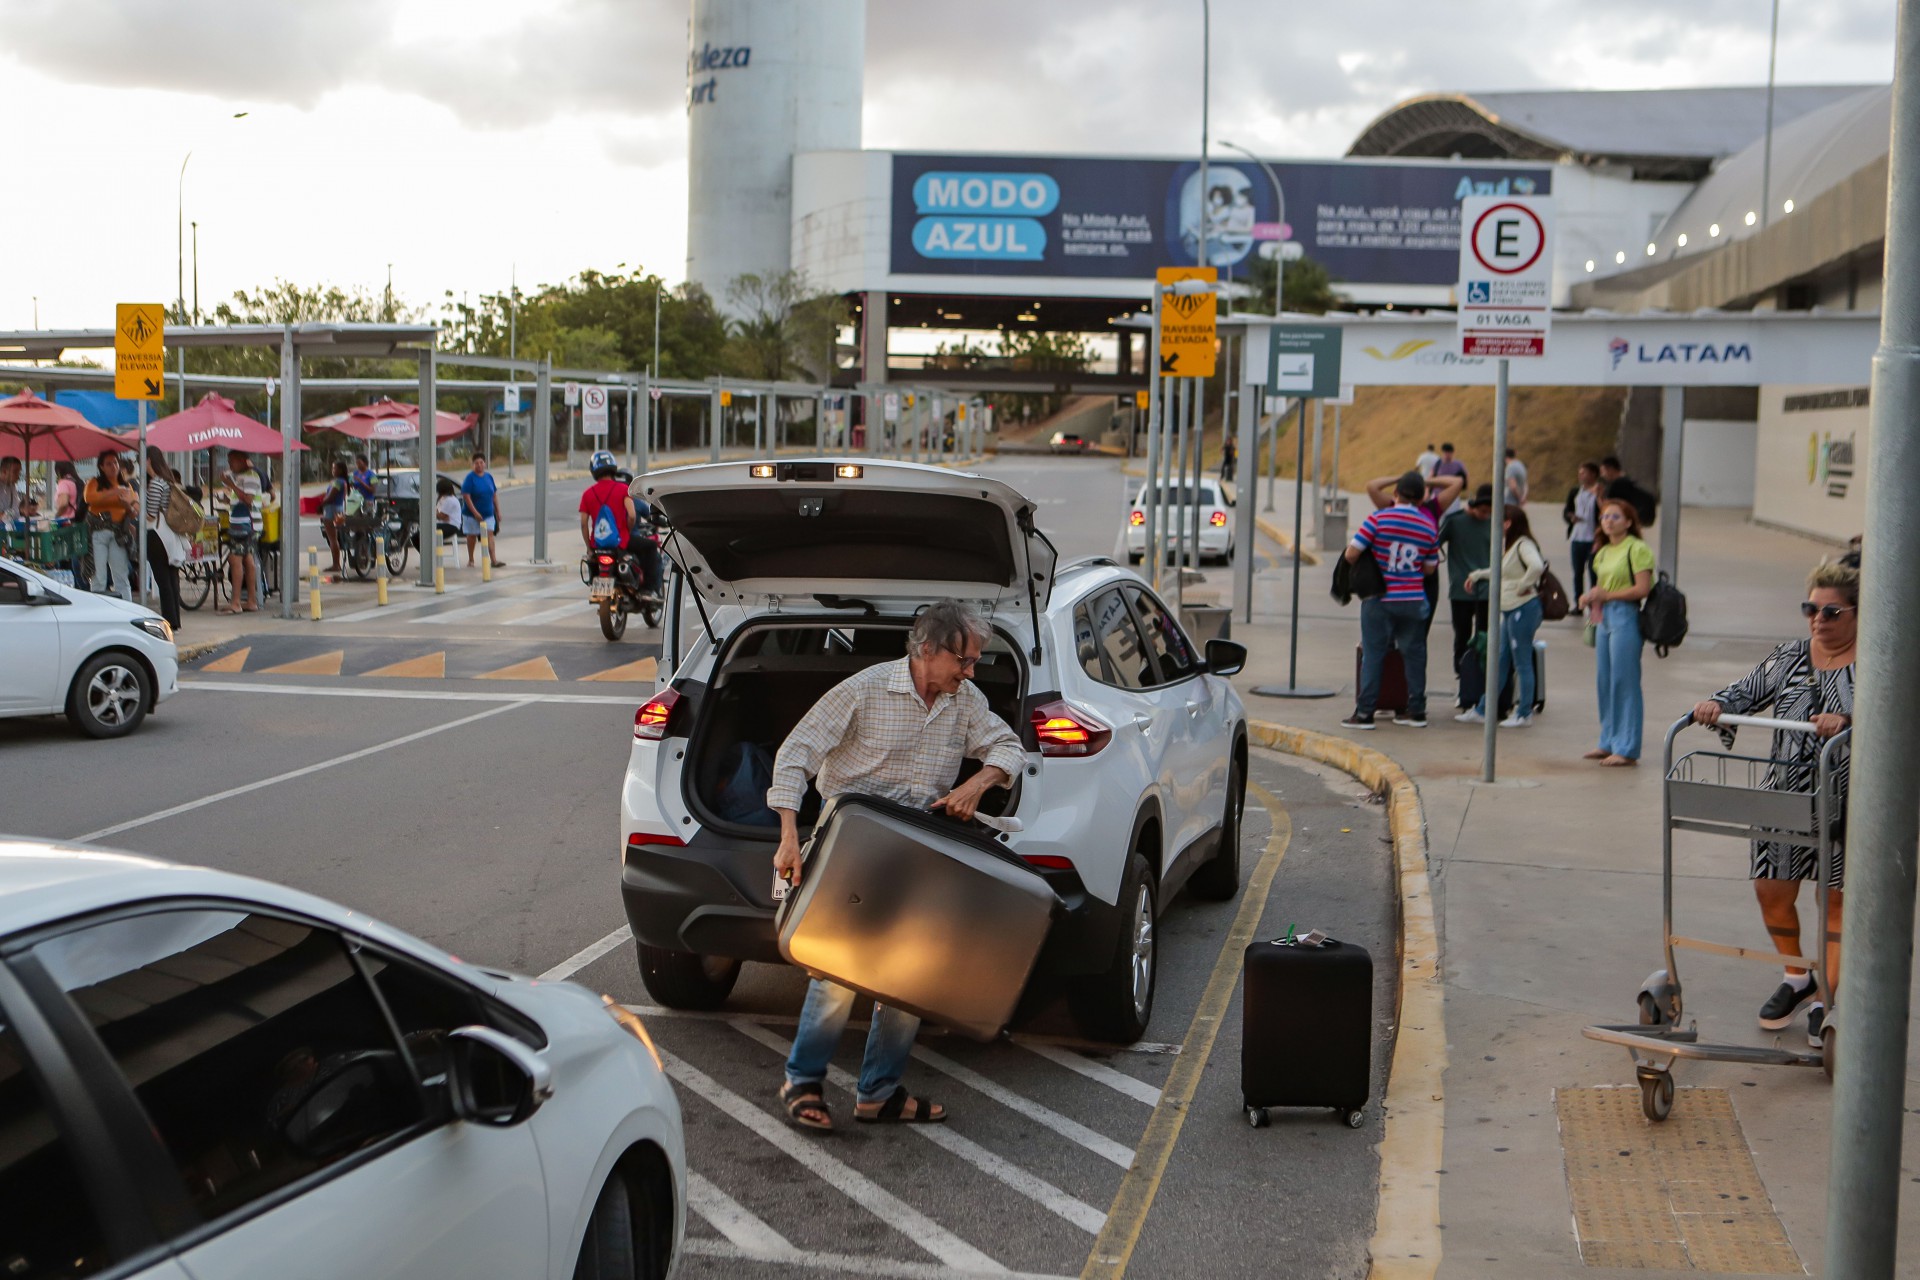 ÓRGÃO de defesa do consumidor questiona cobrança na área de embarque e desembarque no Aeroporto (Foto: FCO FONTENELE)